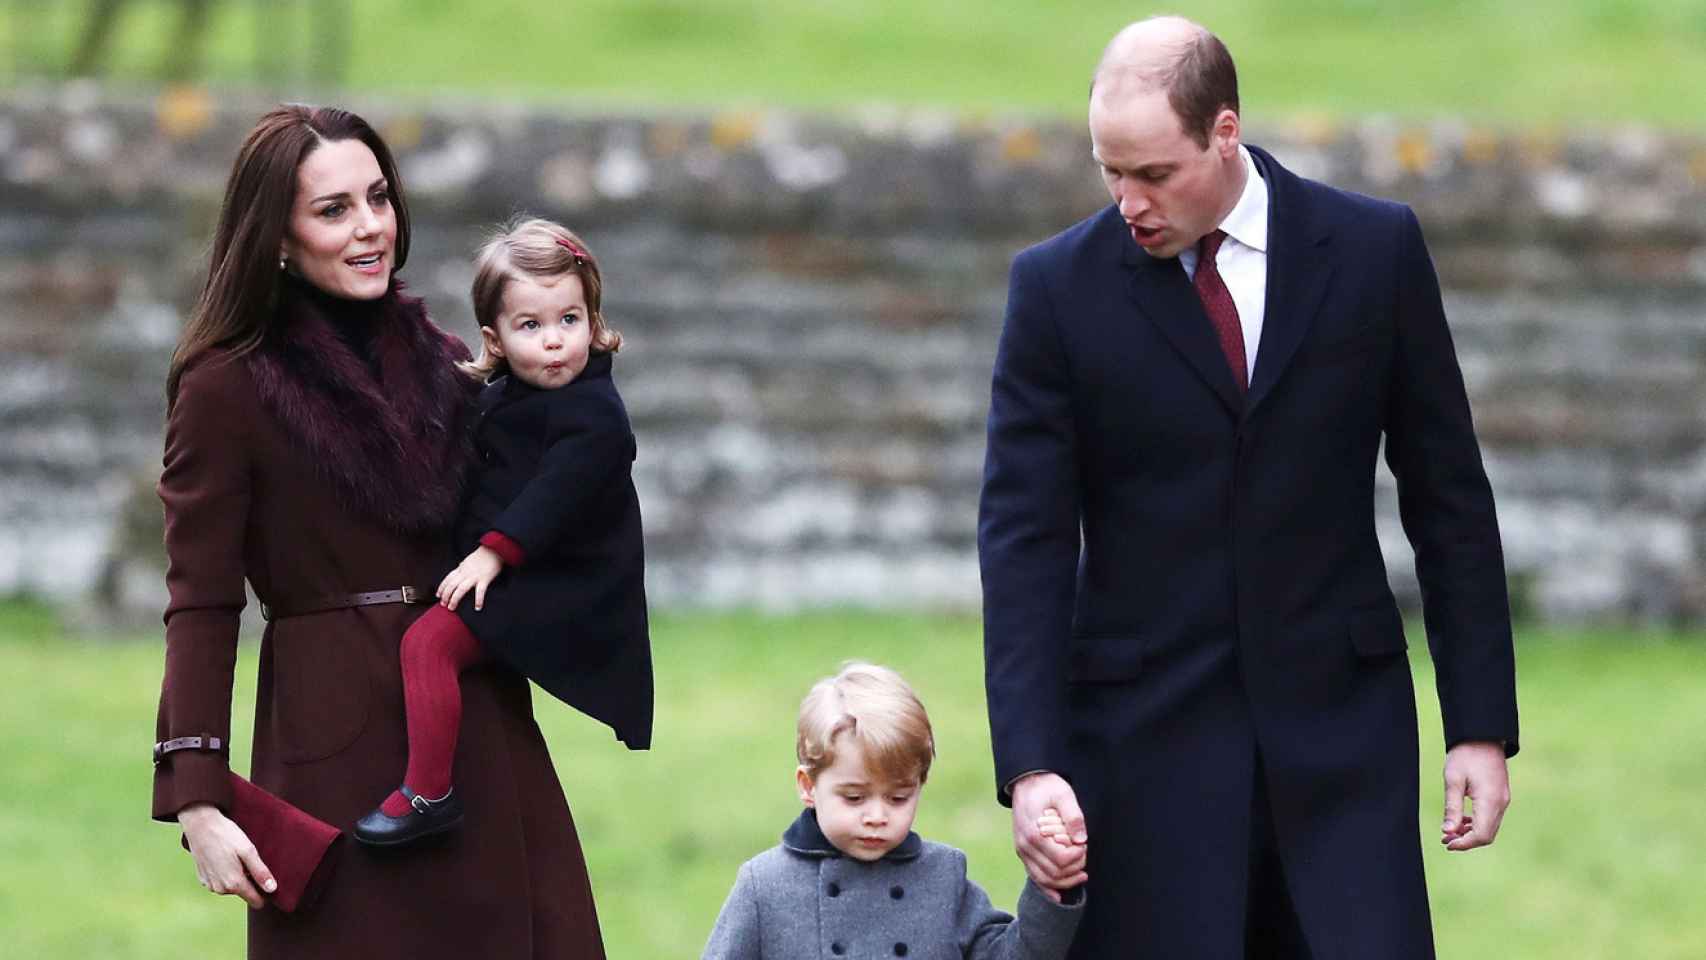 La familia del príncipe Guillermo y Kate middleton en imágenes